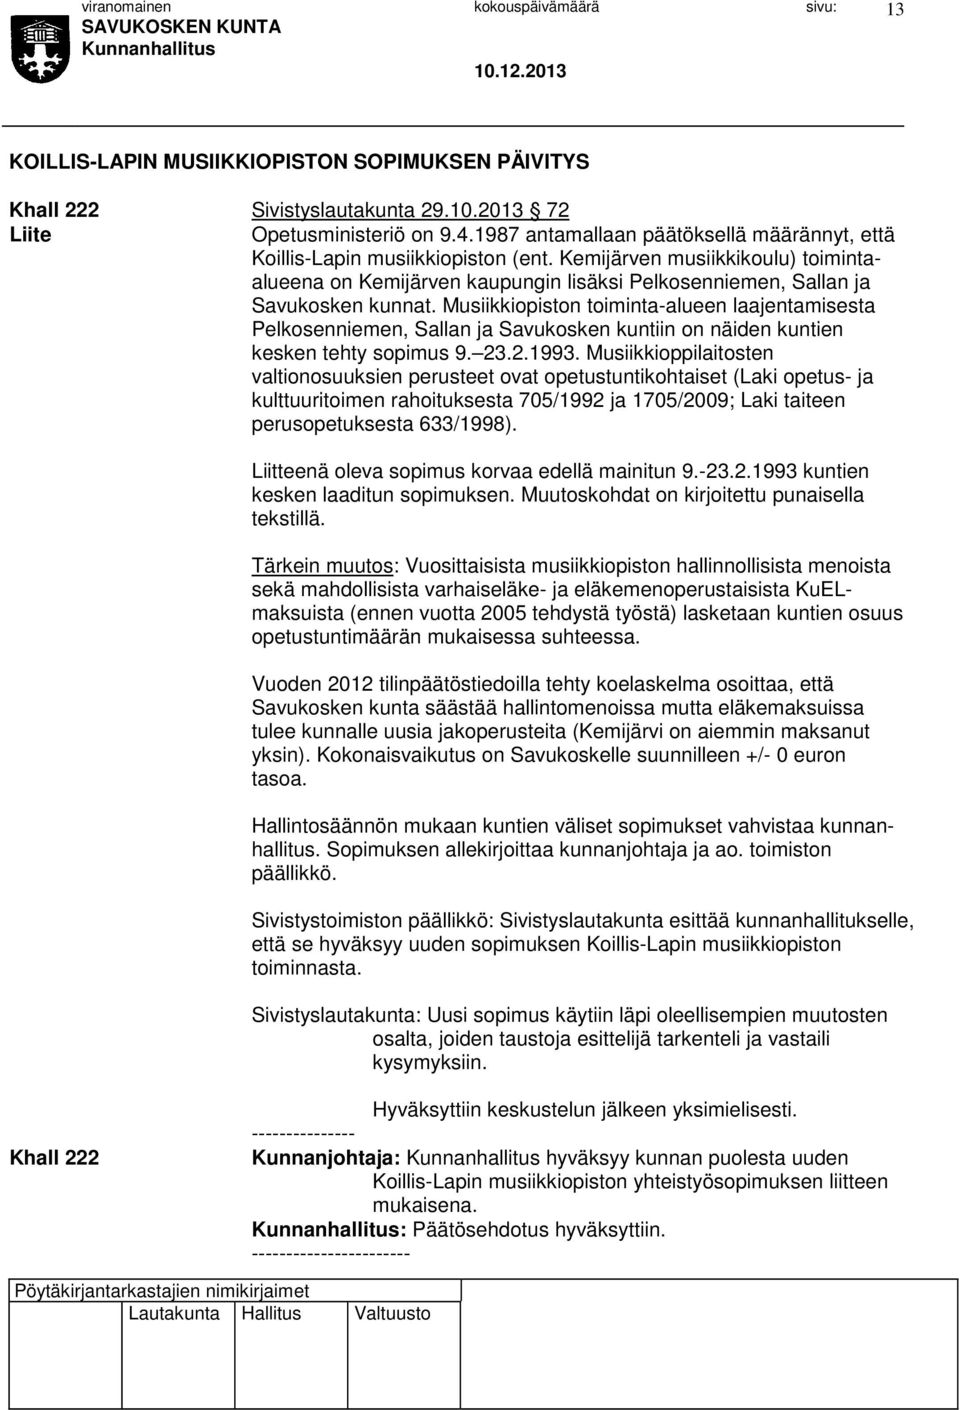 Musiikkiopiston toiminta-alueen laajentamisesta Pelkosenniemen, Sallan ja Savukosken kuntiin on näiden kuntien kesken tehty sopimus 9. 23.2.1993.